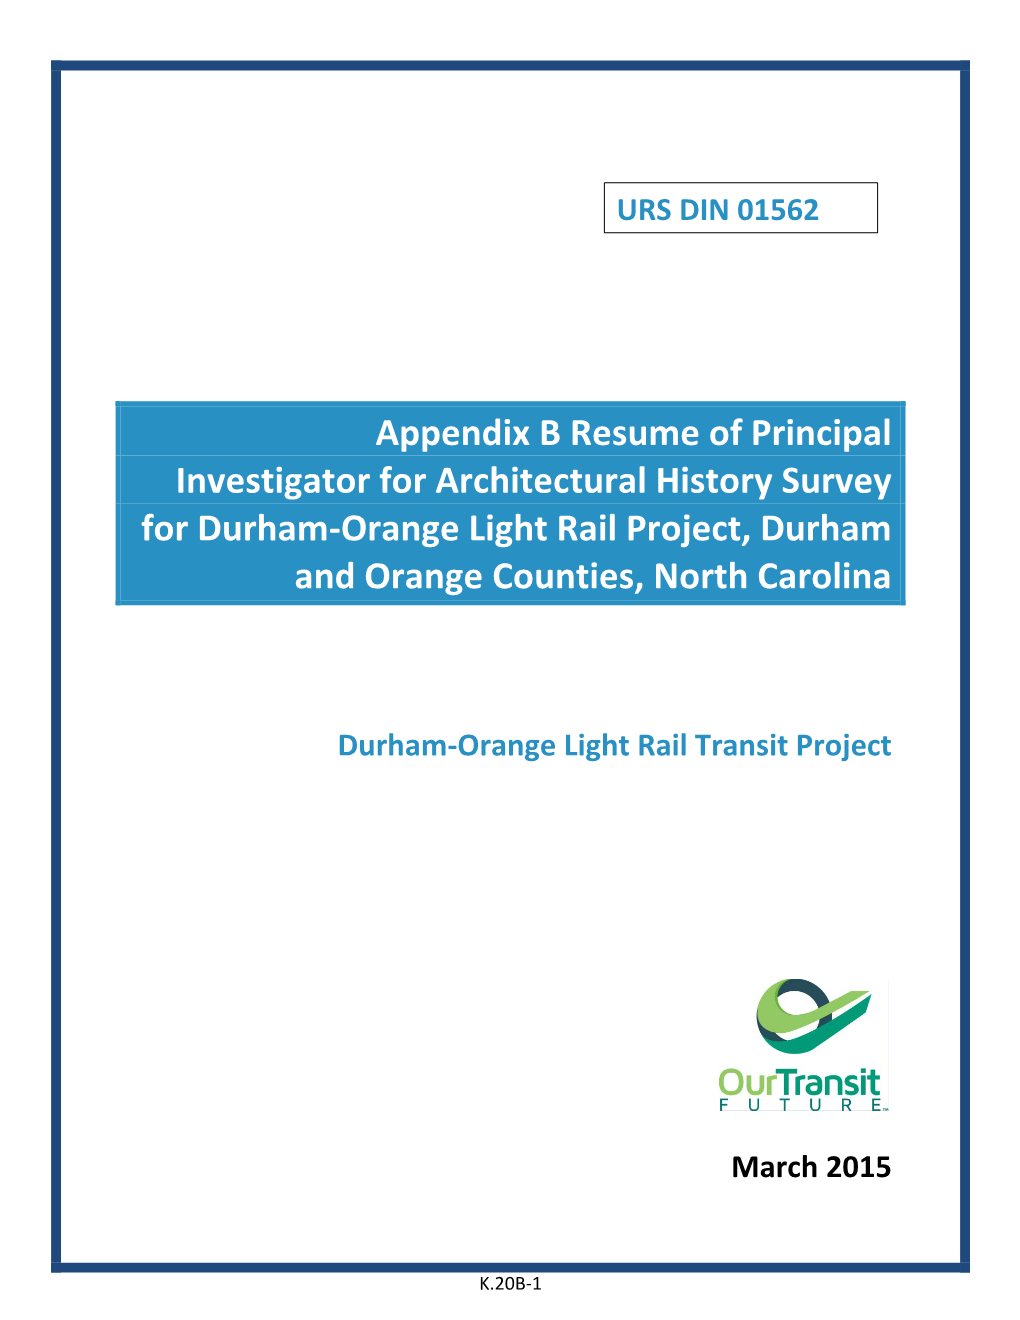 Appendix K20 – Architectural History Survey Report